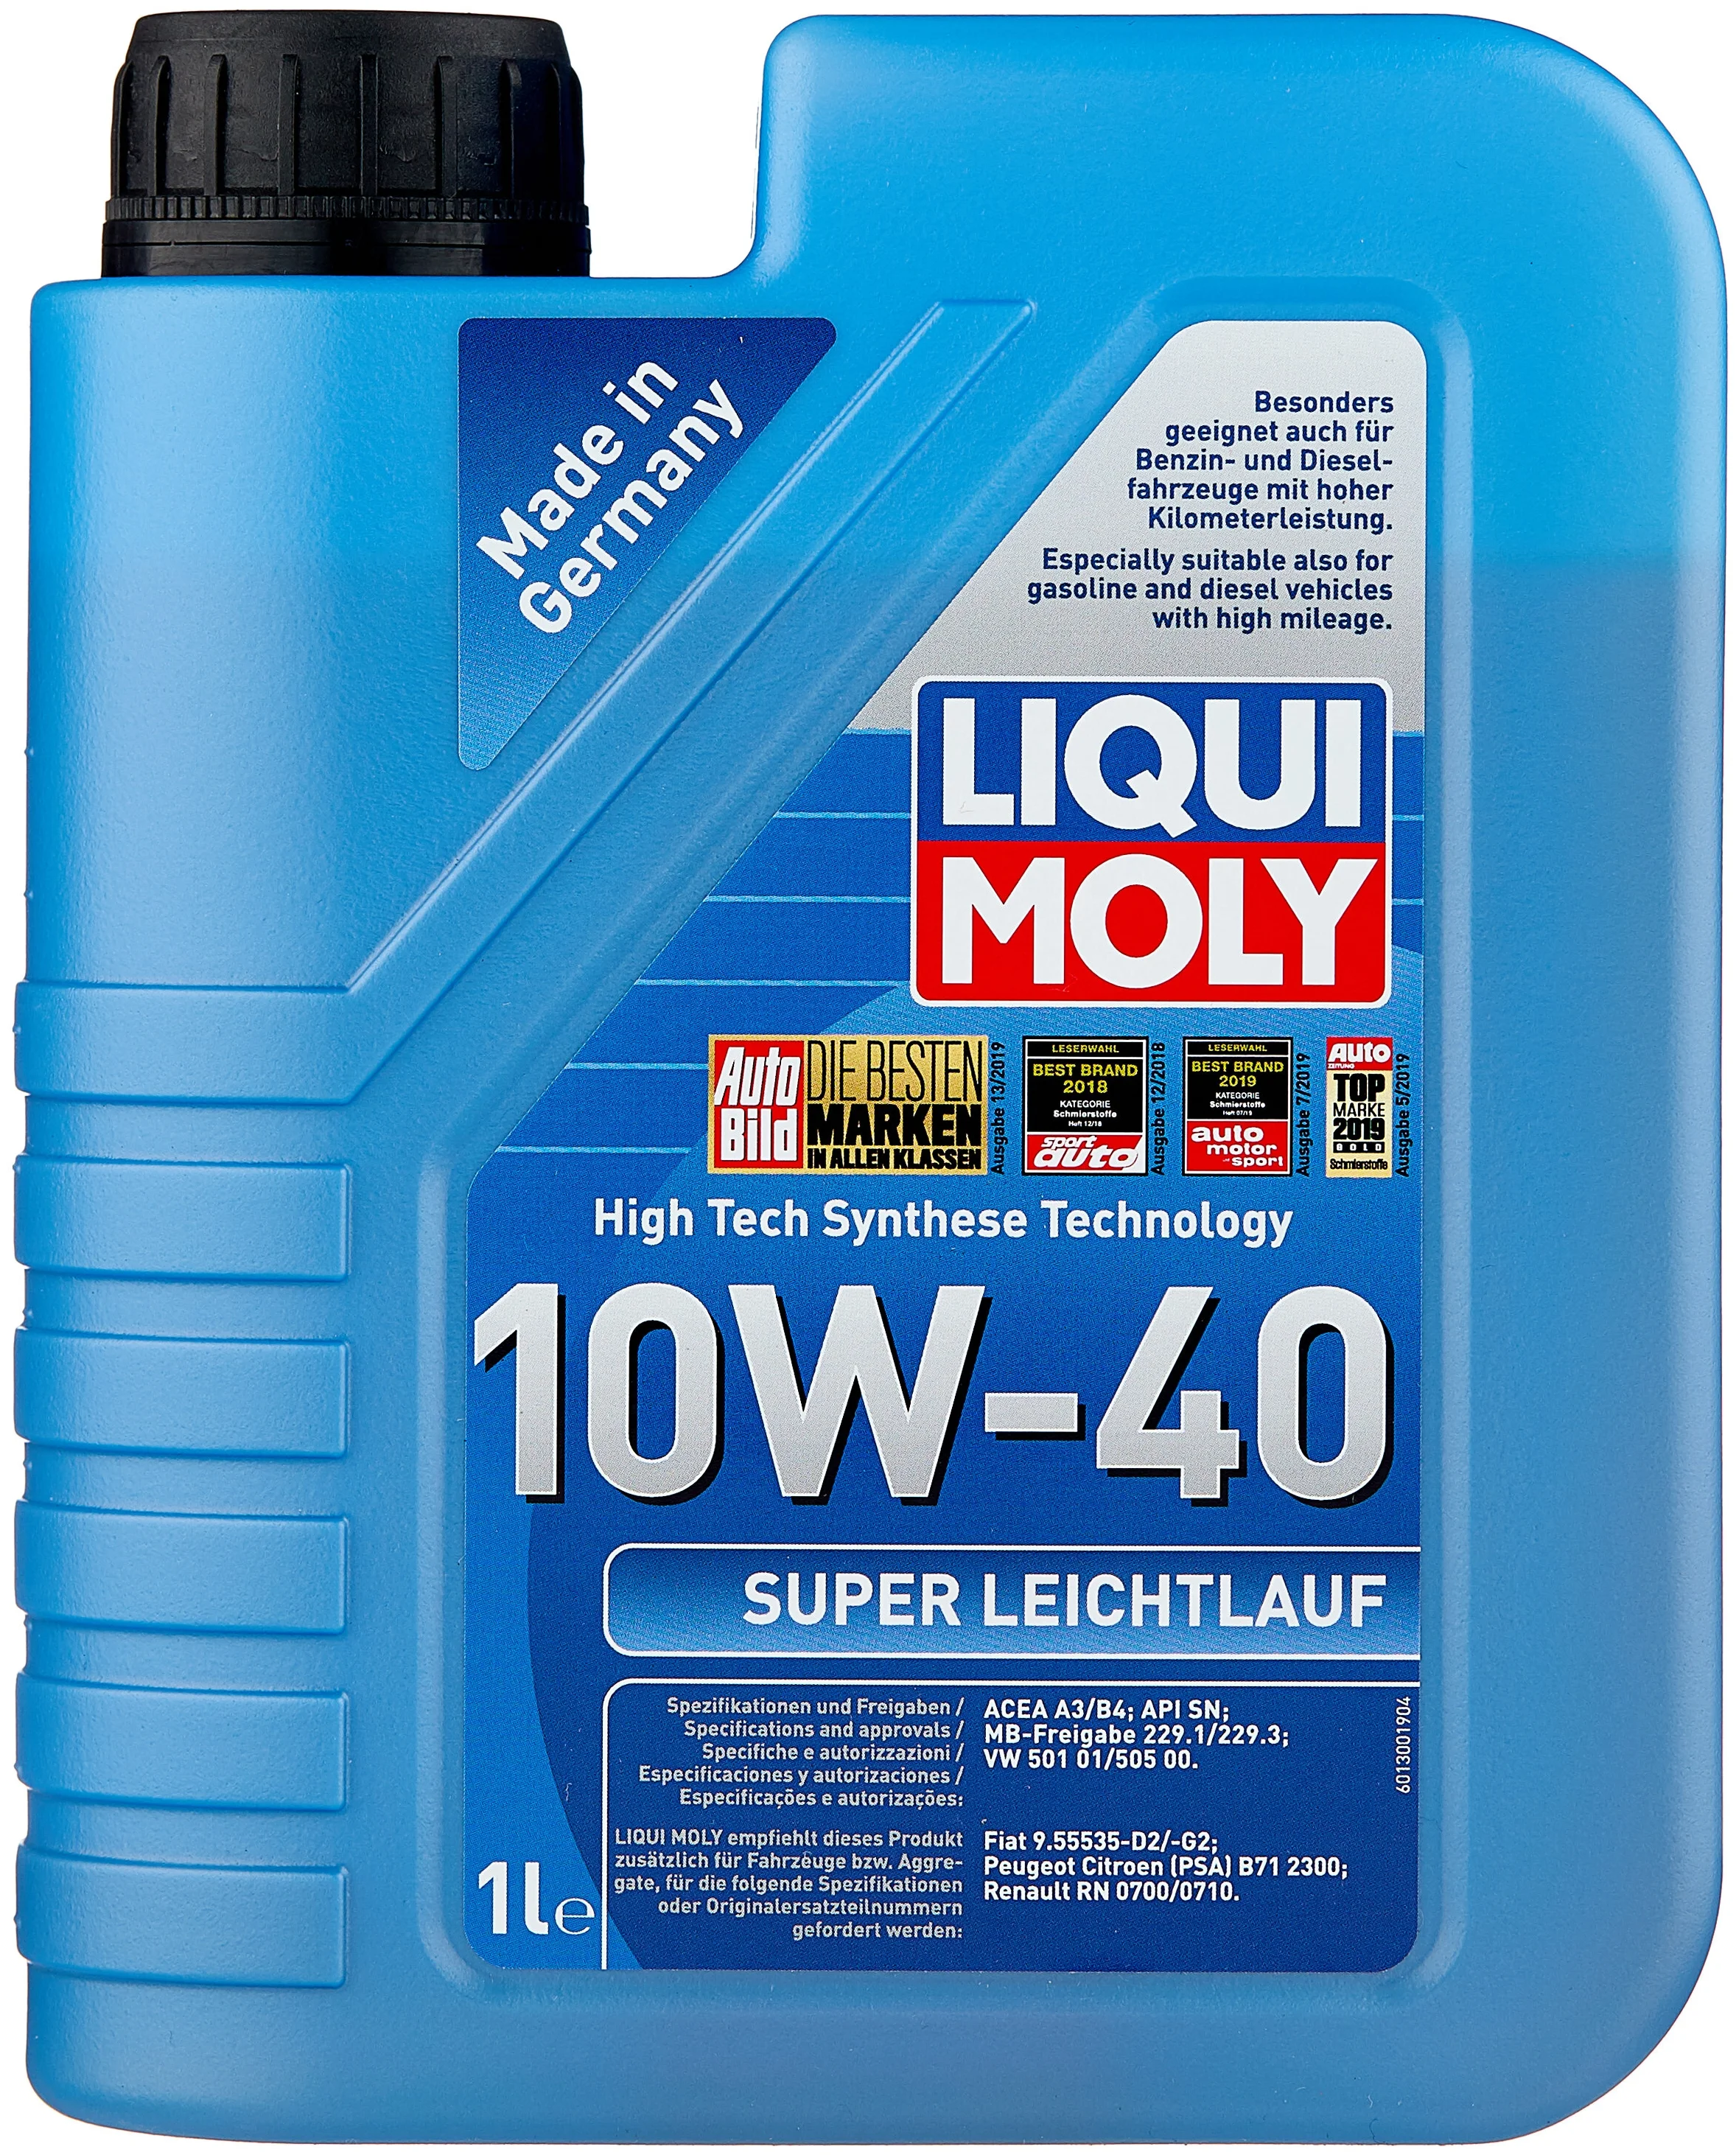 LIQUI MOLY Super Leichtlauf 10W-40 - класс вязкости: 10W-40